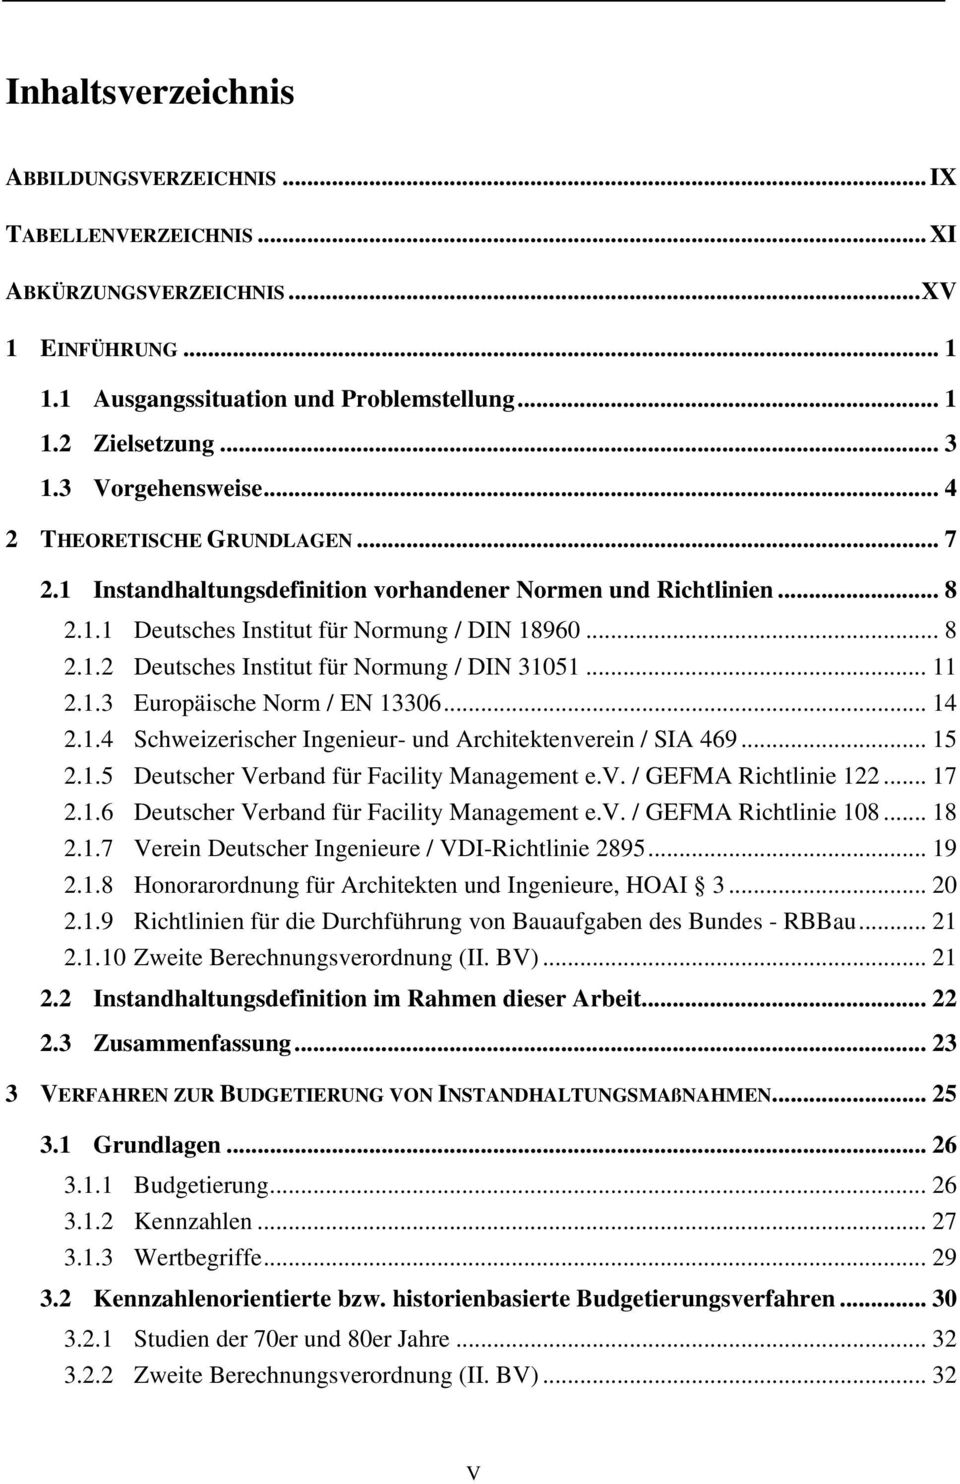 .. 11 2.1.3 Europäische Norm / EN 13306... 14 2.1.4 Schweizerischer Ingenieur- und Architektenverein / SIA 469... 15 2.1.5 Deutscher Verband für Facility Management e.v. / GEFMA Richtlinie 122... 17 2.